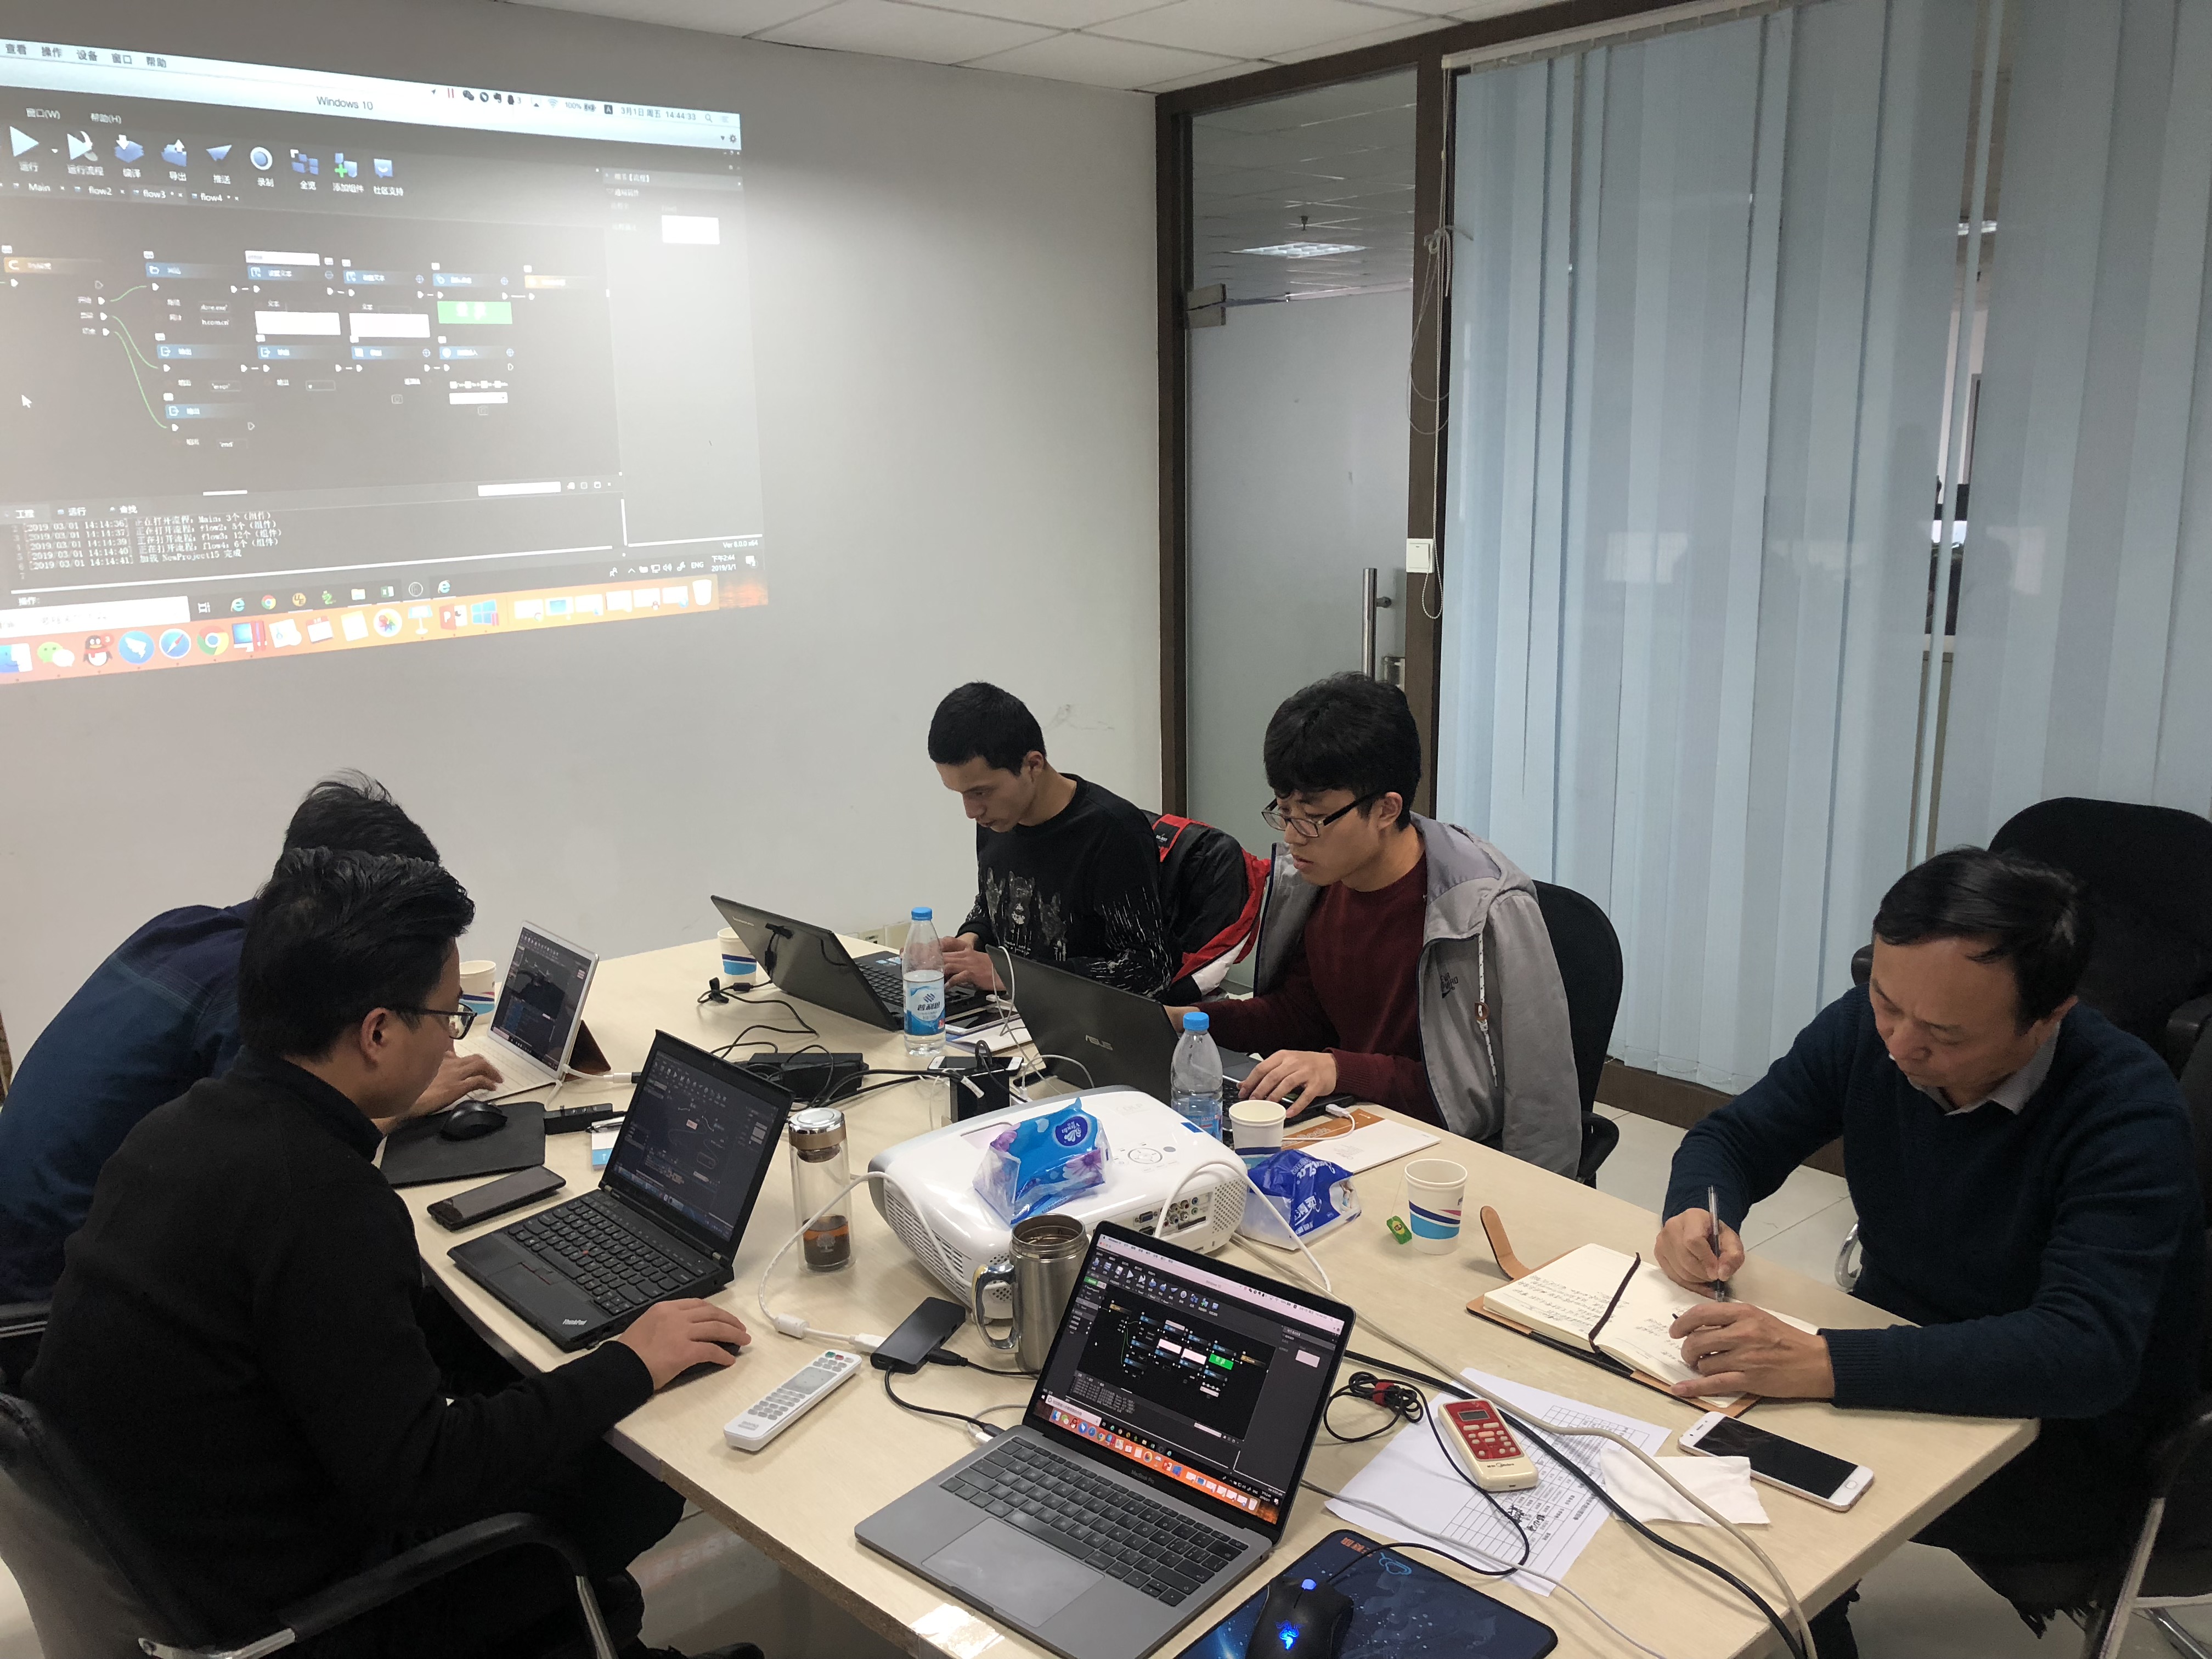 iS-RPA 技术认证培训 - 南京 20190228 班 - 培训完成